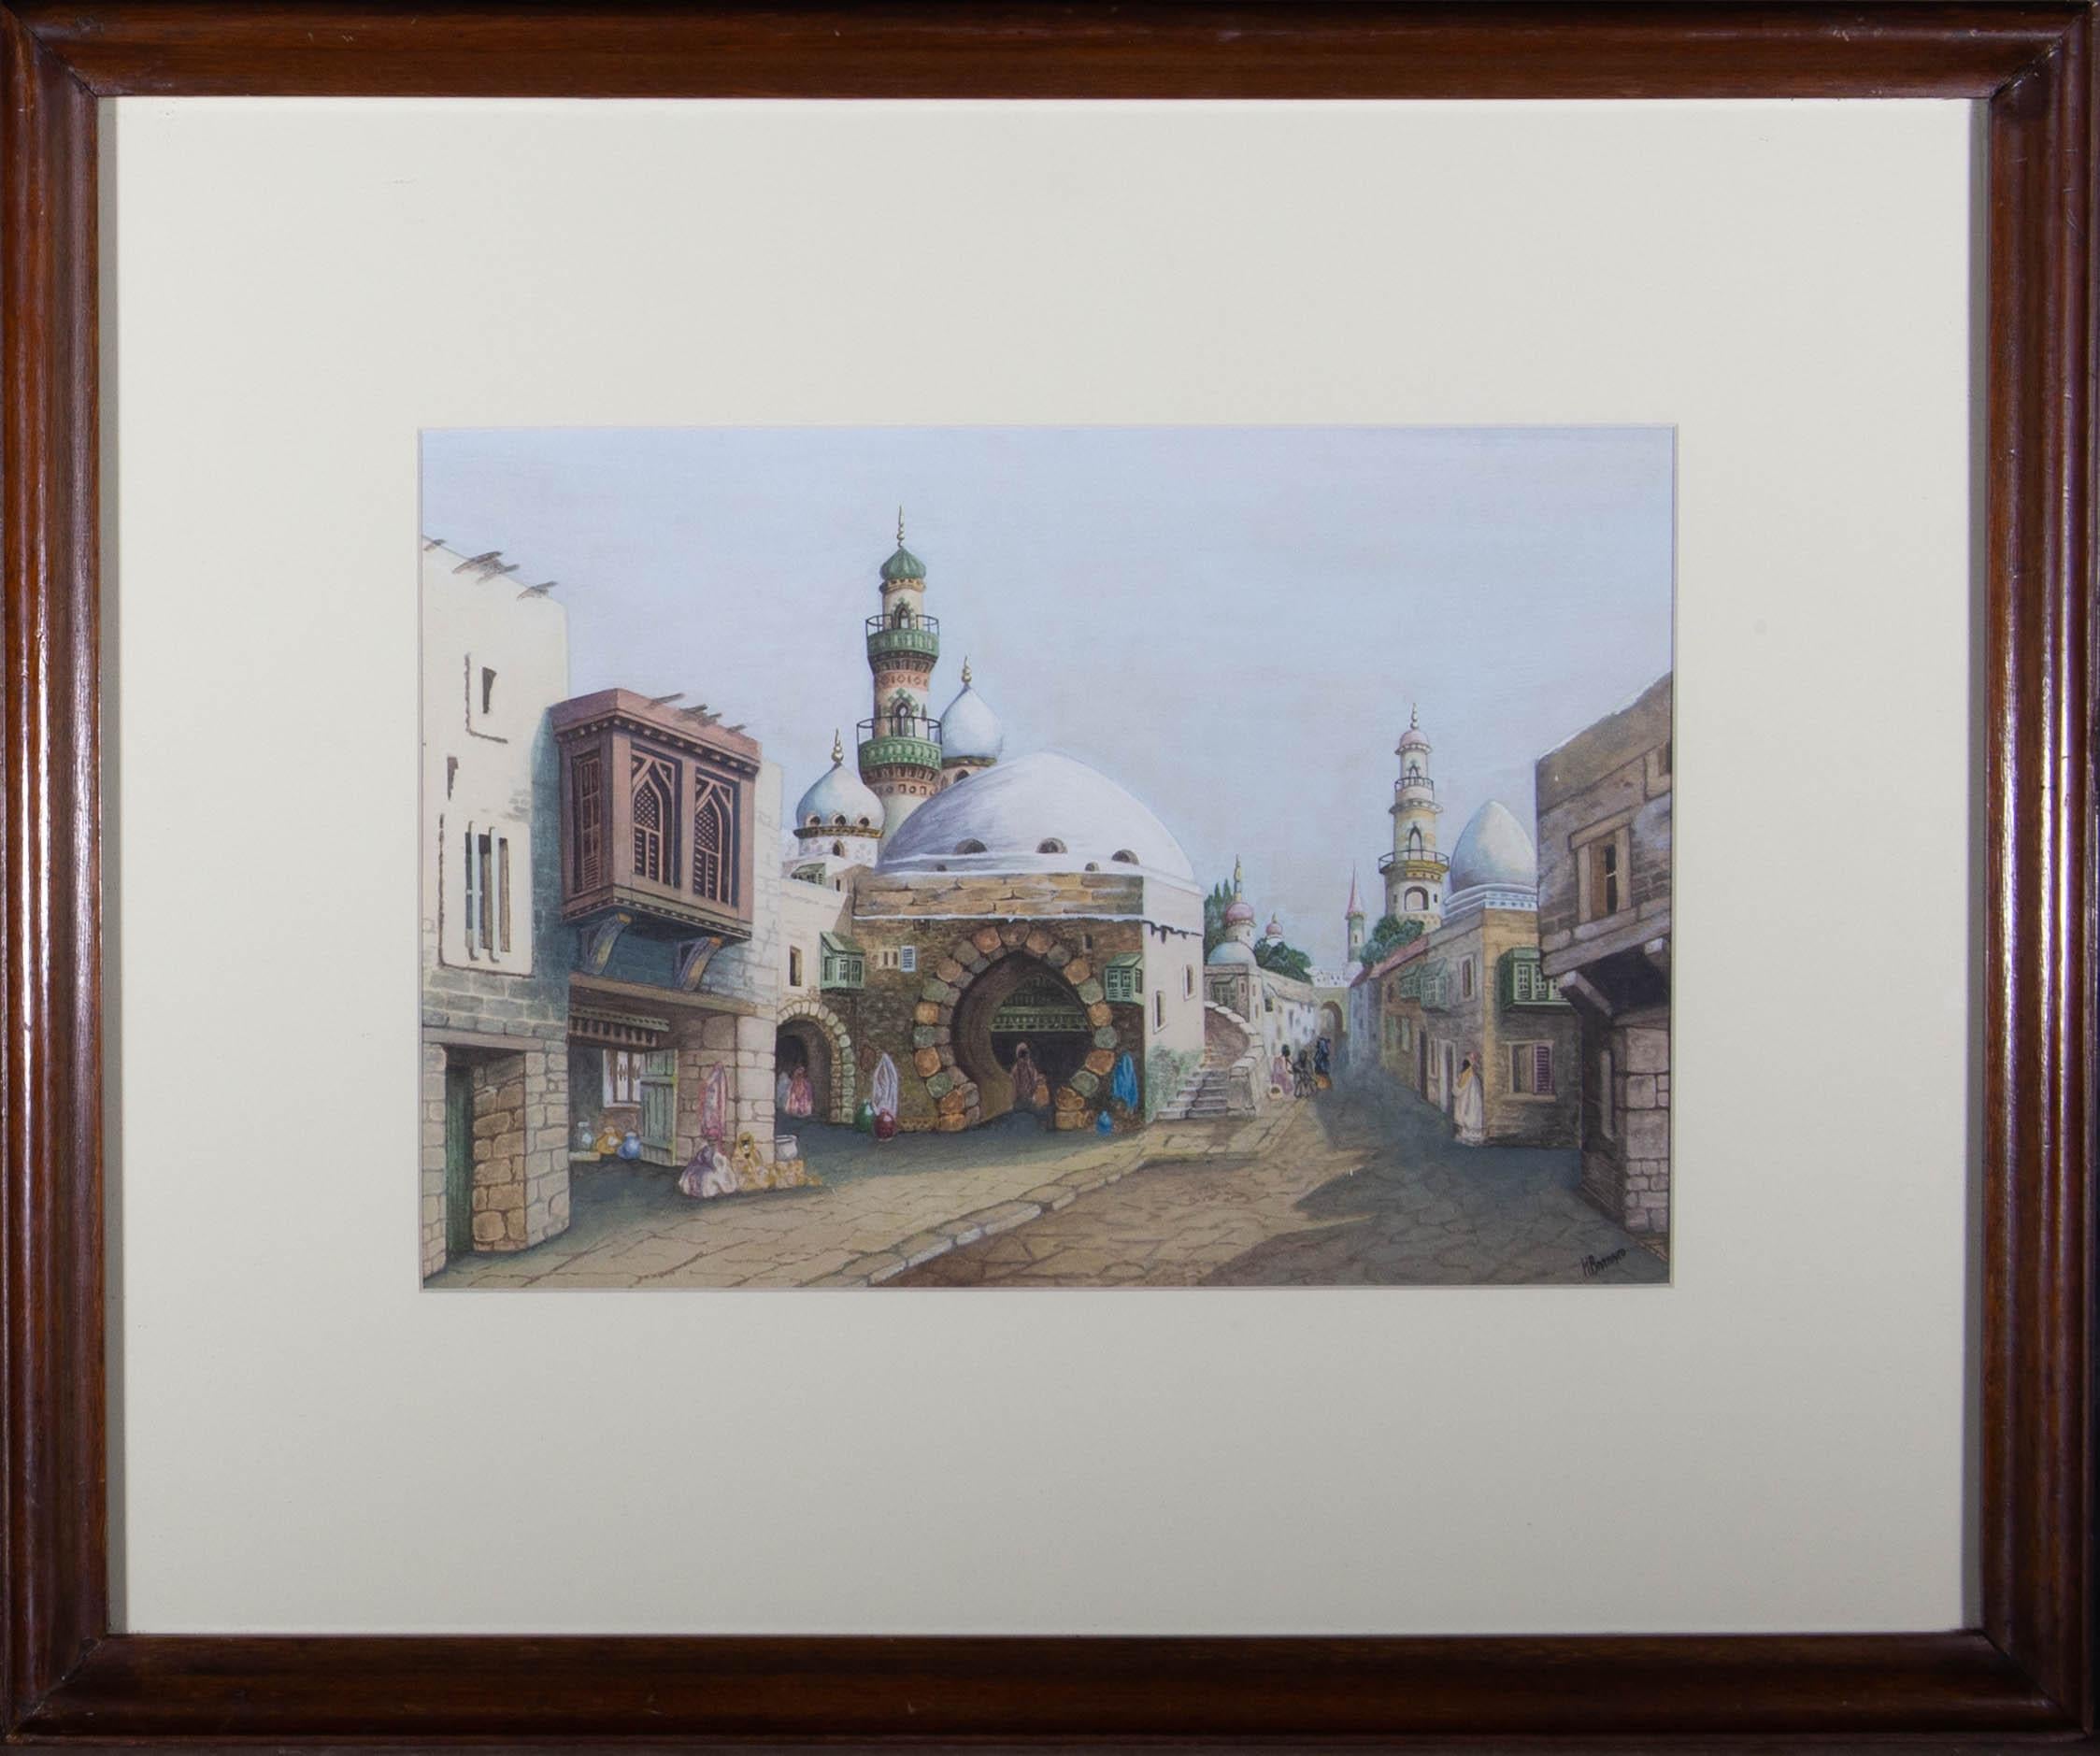 Ein fesselndes Aquarell mit Gouache-Details von H. Barnard, das eine nordafrikanische Straßenszene mit Figuren darstellt. Signiert in der unteren rechten Ecke. Gut präsentiert in einem cremefarbenen Passepartout und in einem Holzrahmen, wie gezeigt.